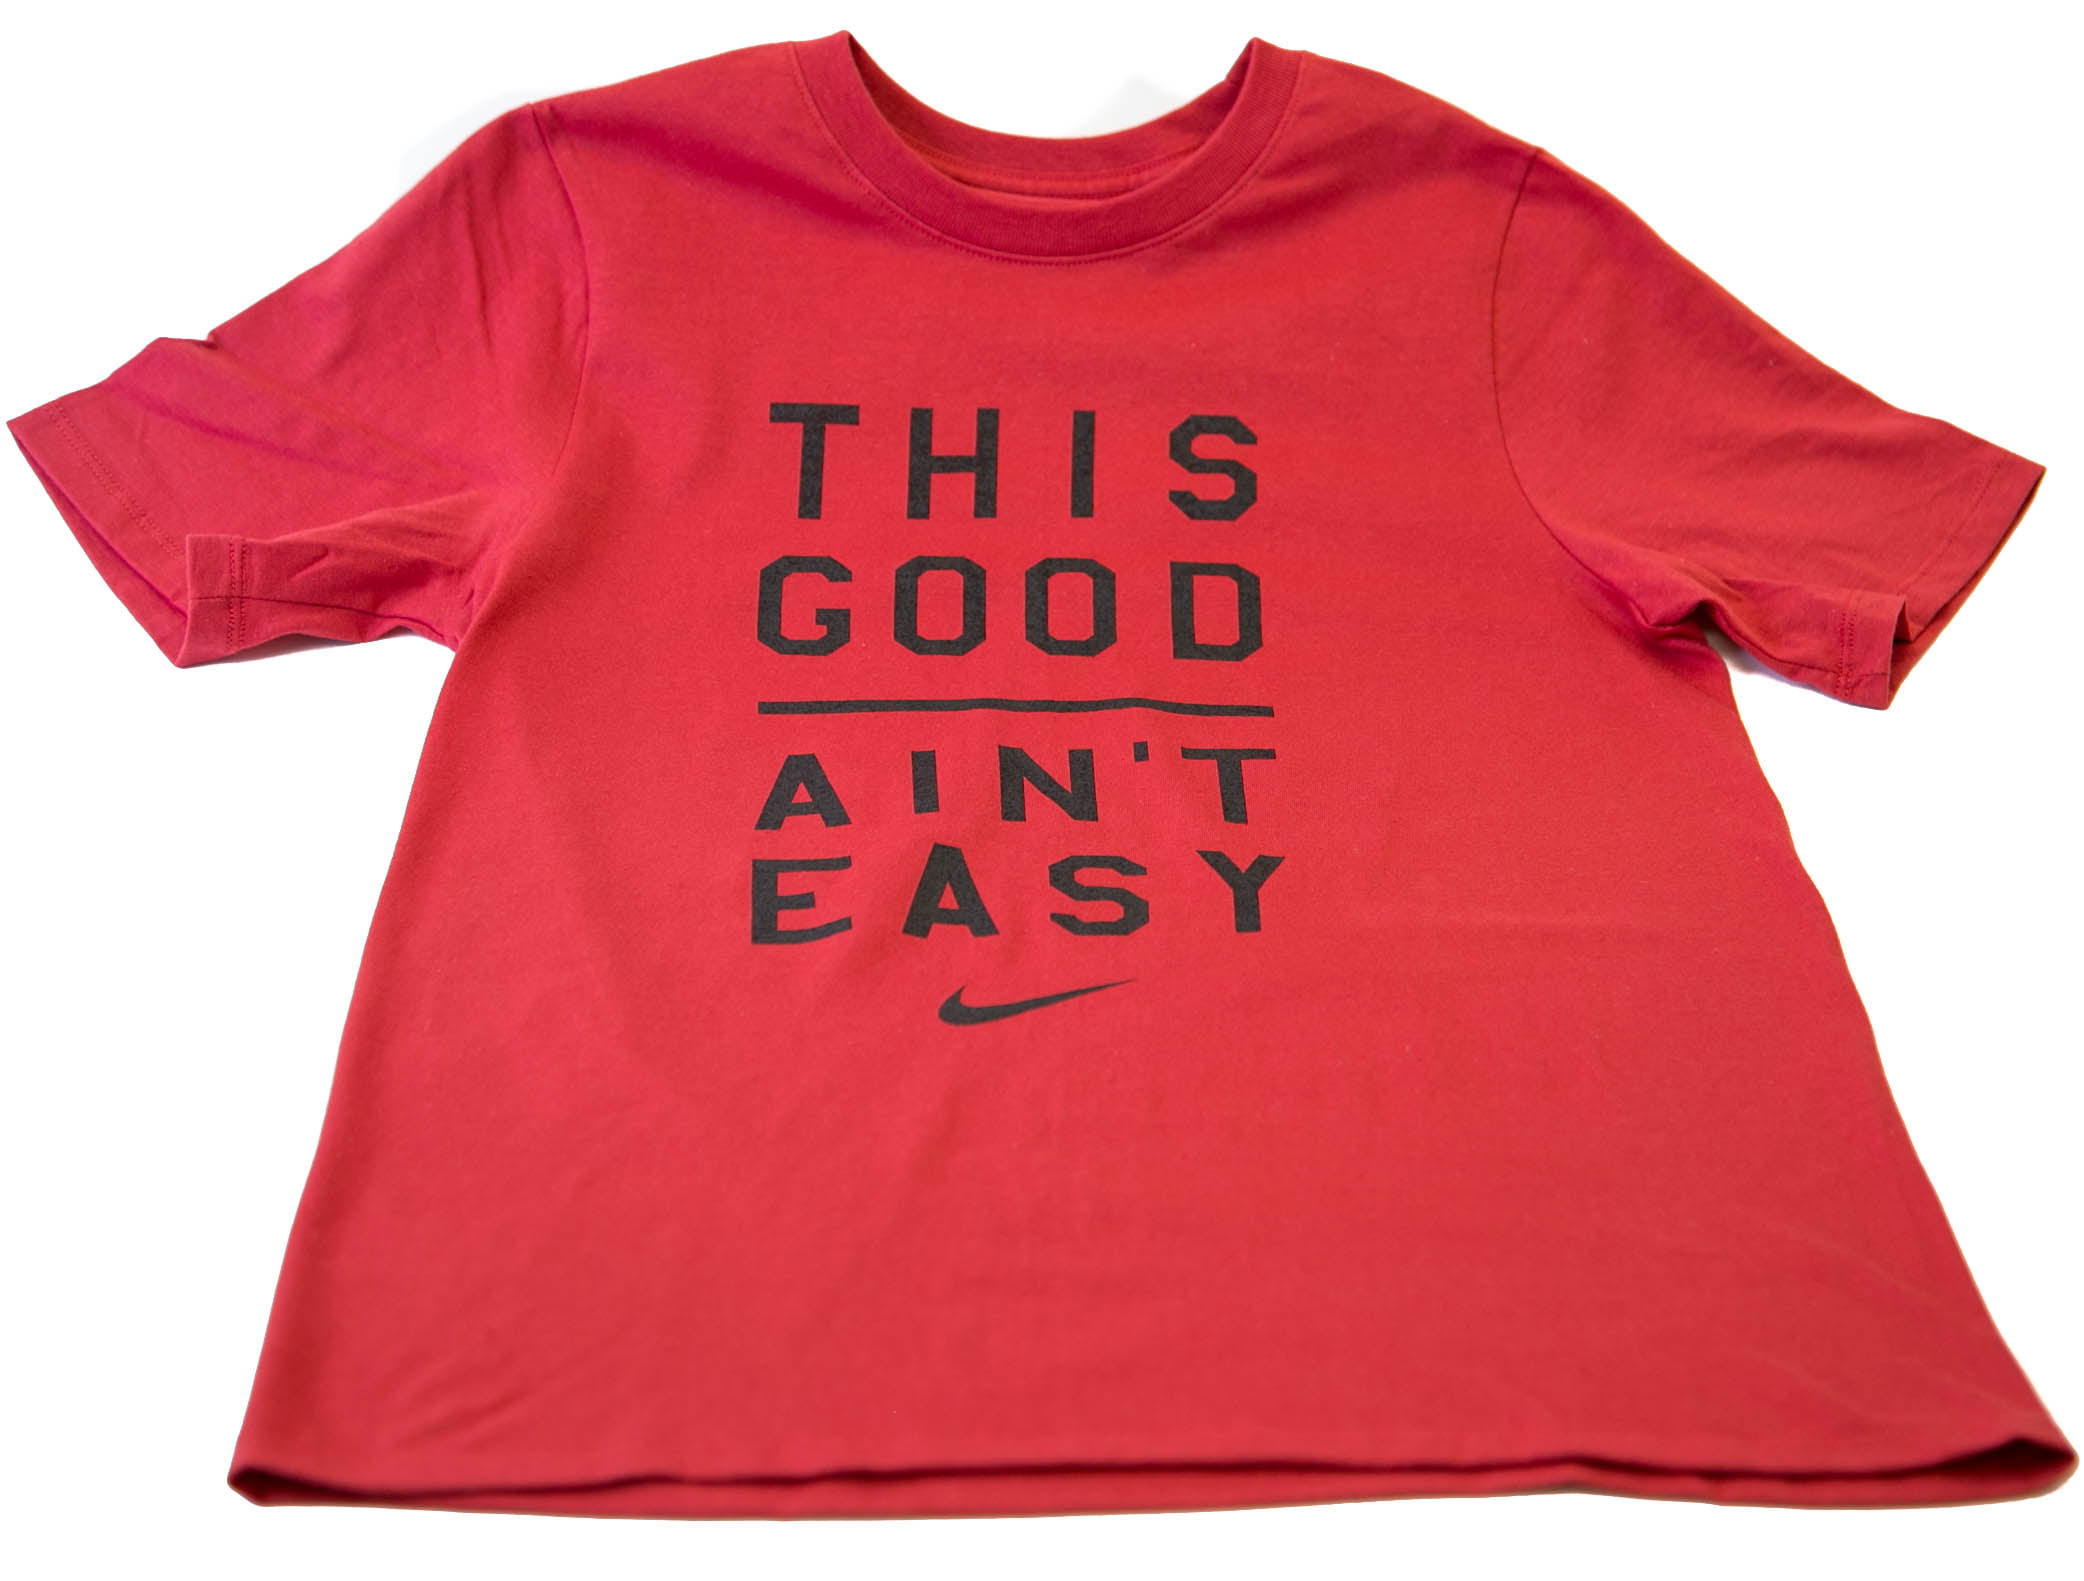 Nike Boys This Good Ain't Easy Tee Shirt - Walmart.com